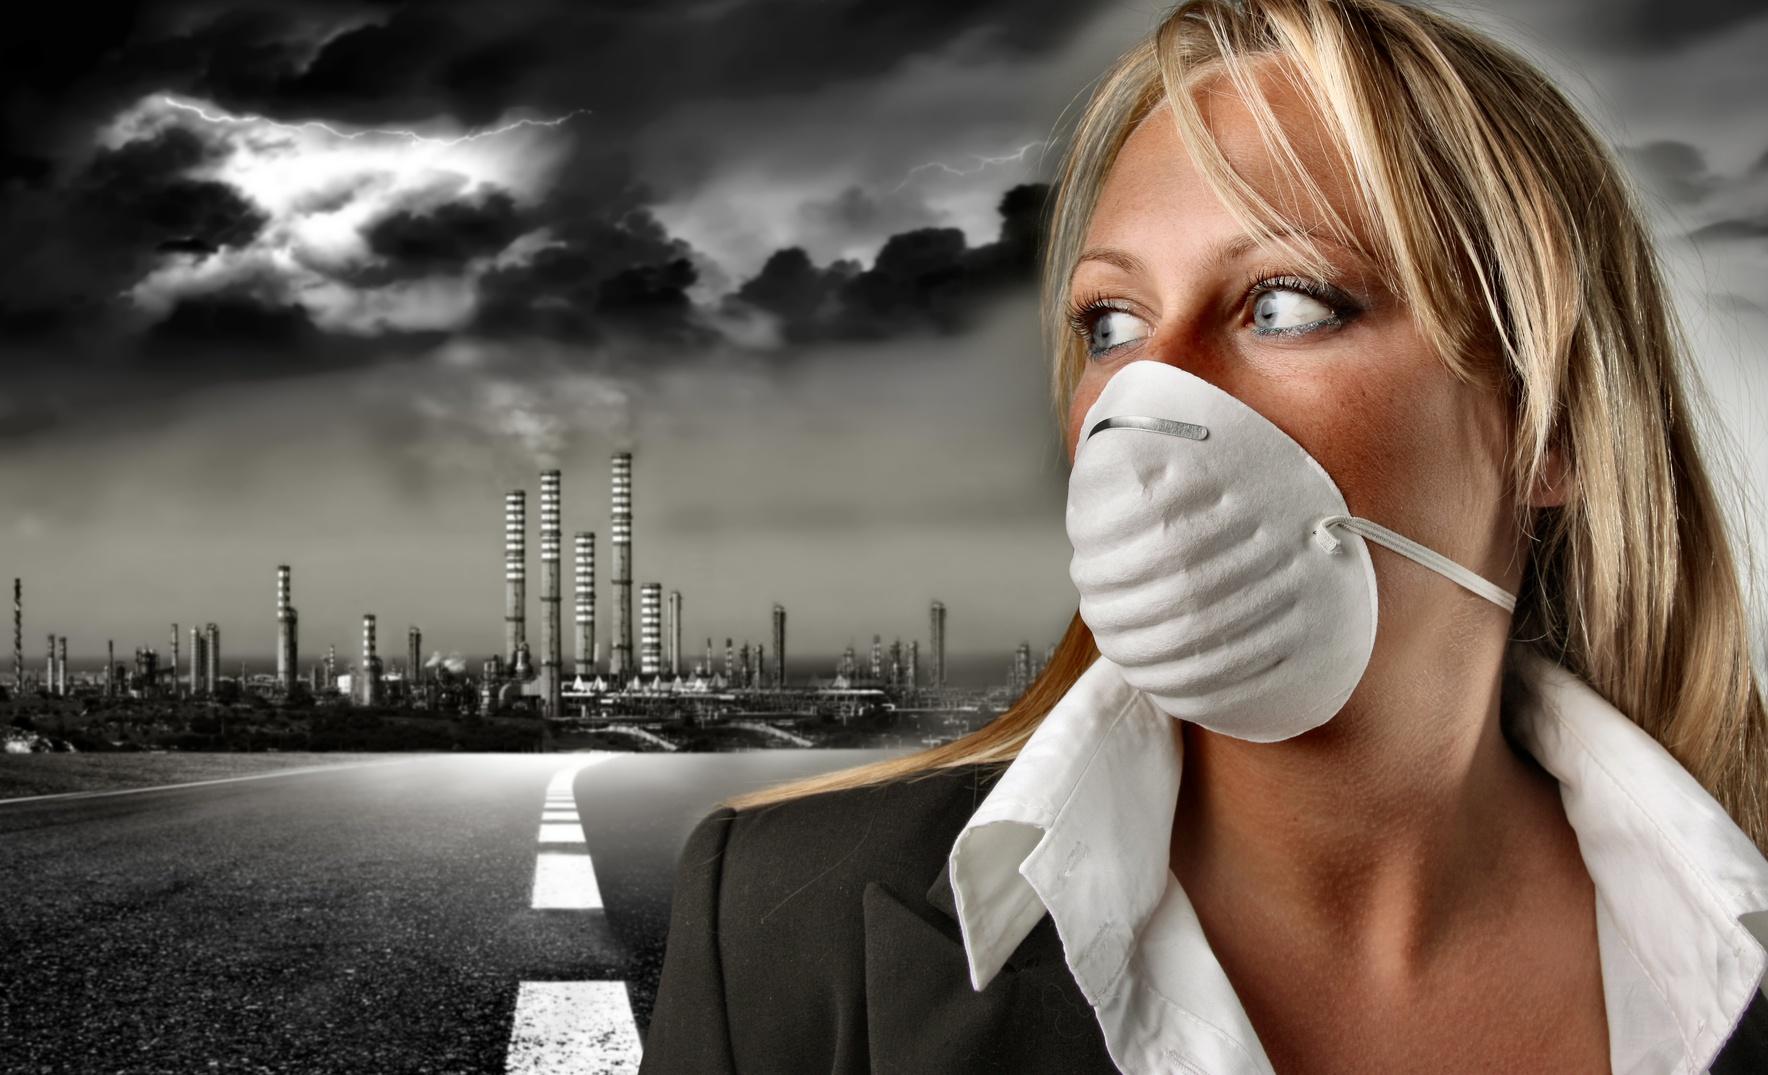 Г воняет. Аэрозоли загрязнение. Загрязнение воздуха женщина в маске. Опасность загрязнения воздуха. Вонь в городе.